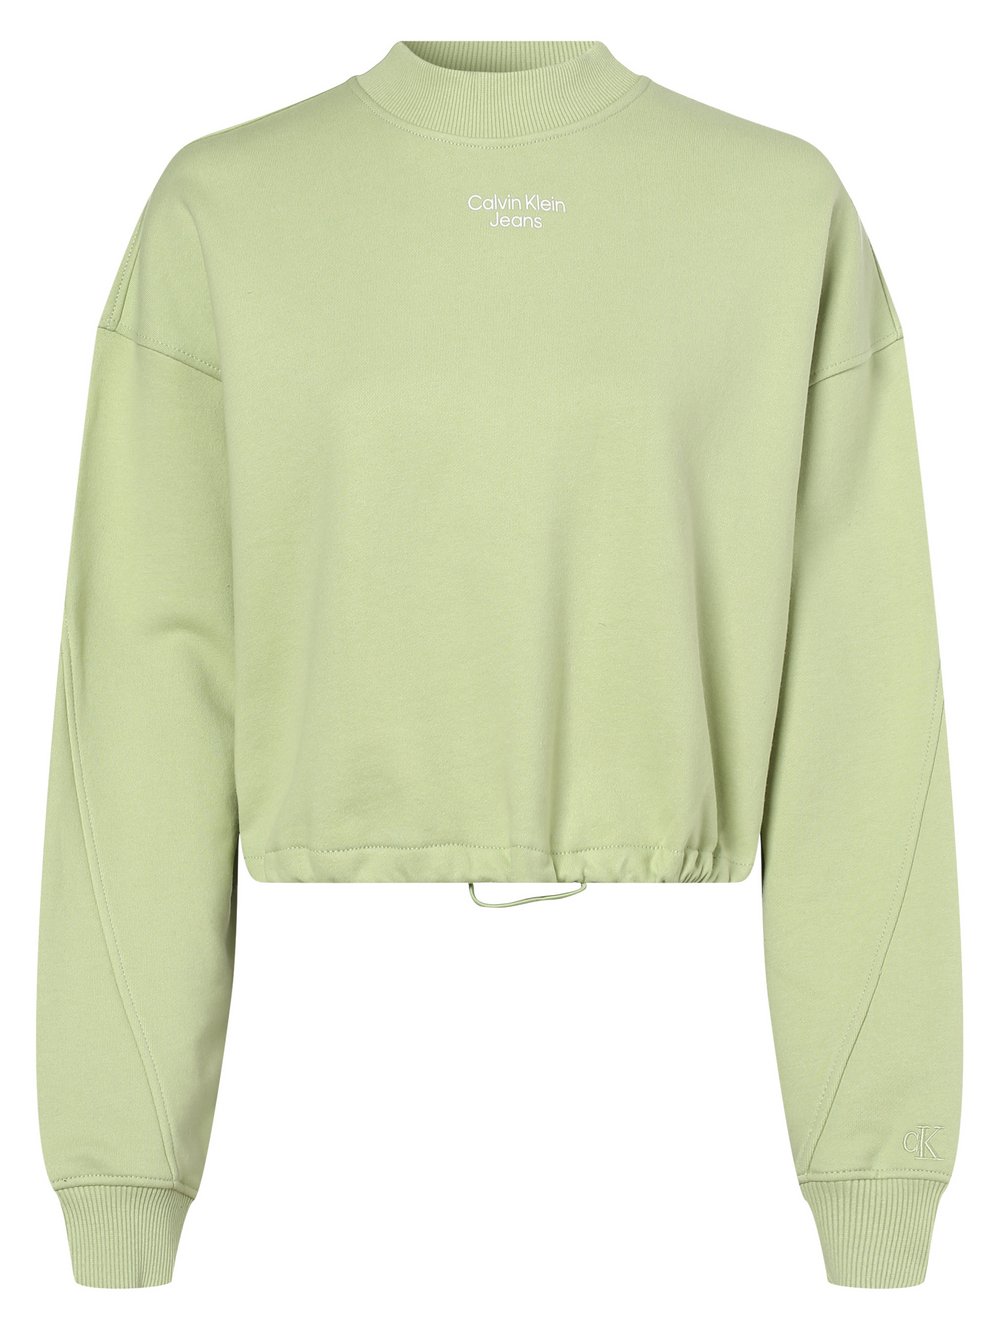 Calvin Klein Jeans - Damska bluza nierozpinana, zielony